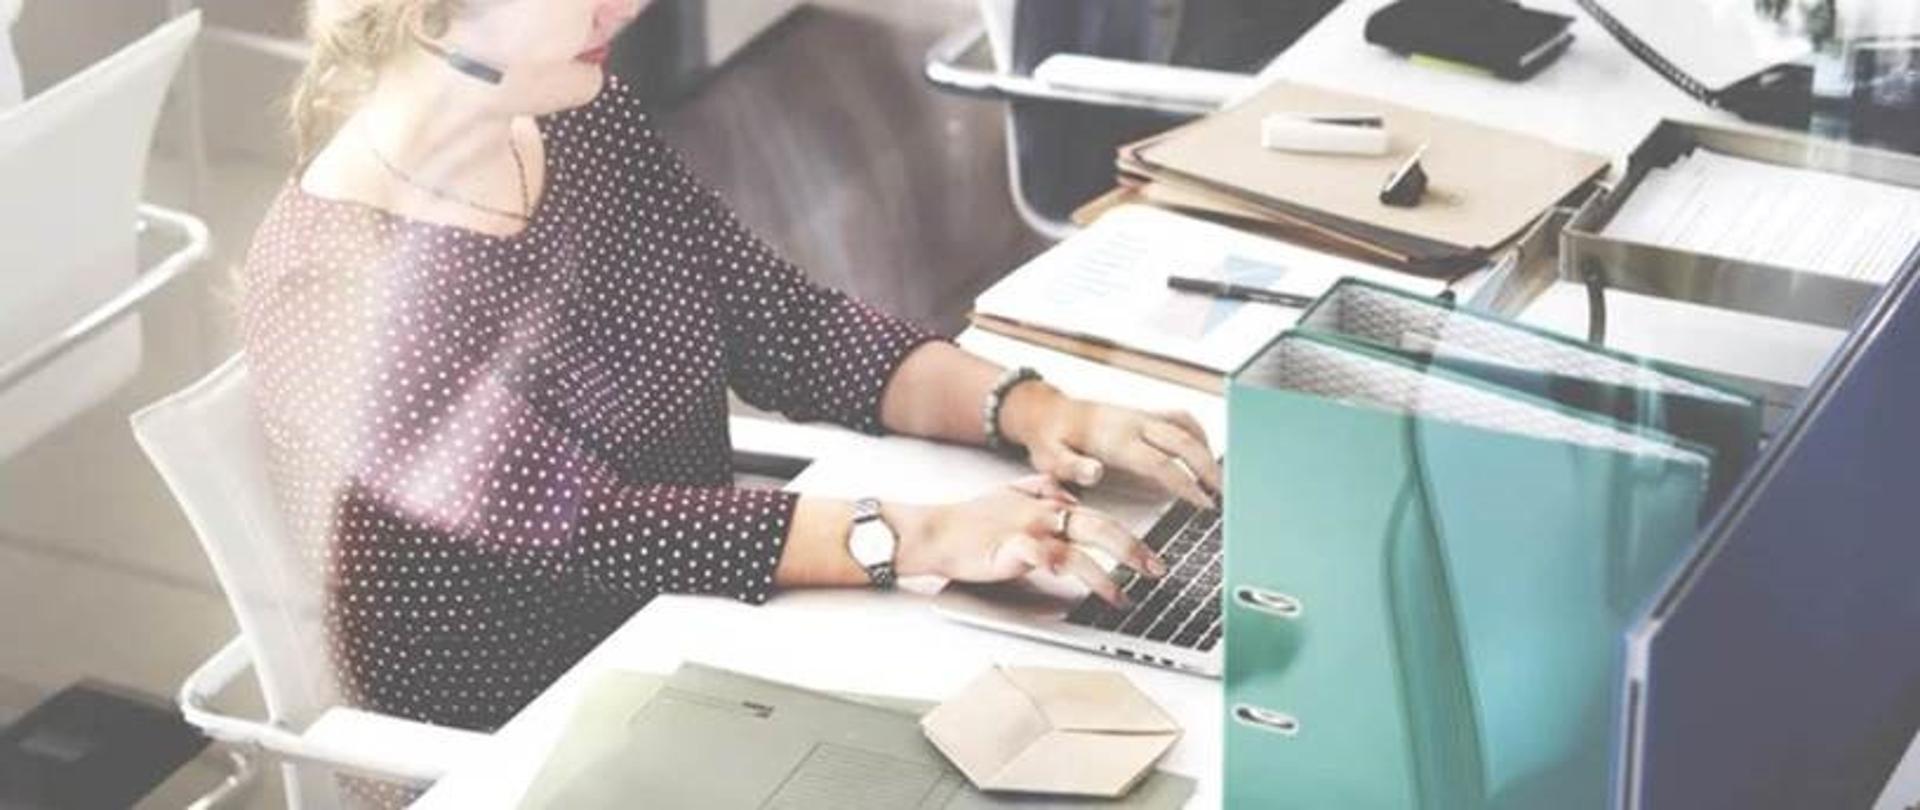 Kobieta w fioletowej bluzce w kropki, pisząca na laptopie przy biurku, rozmawiająca przez słuchawki 